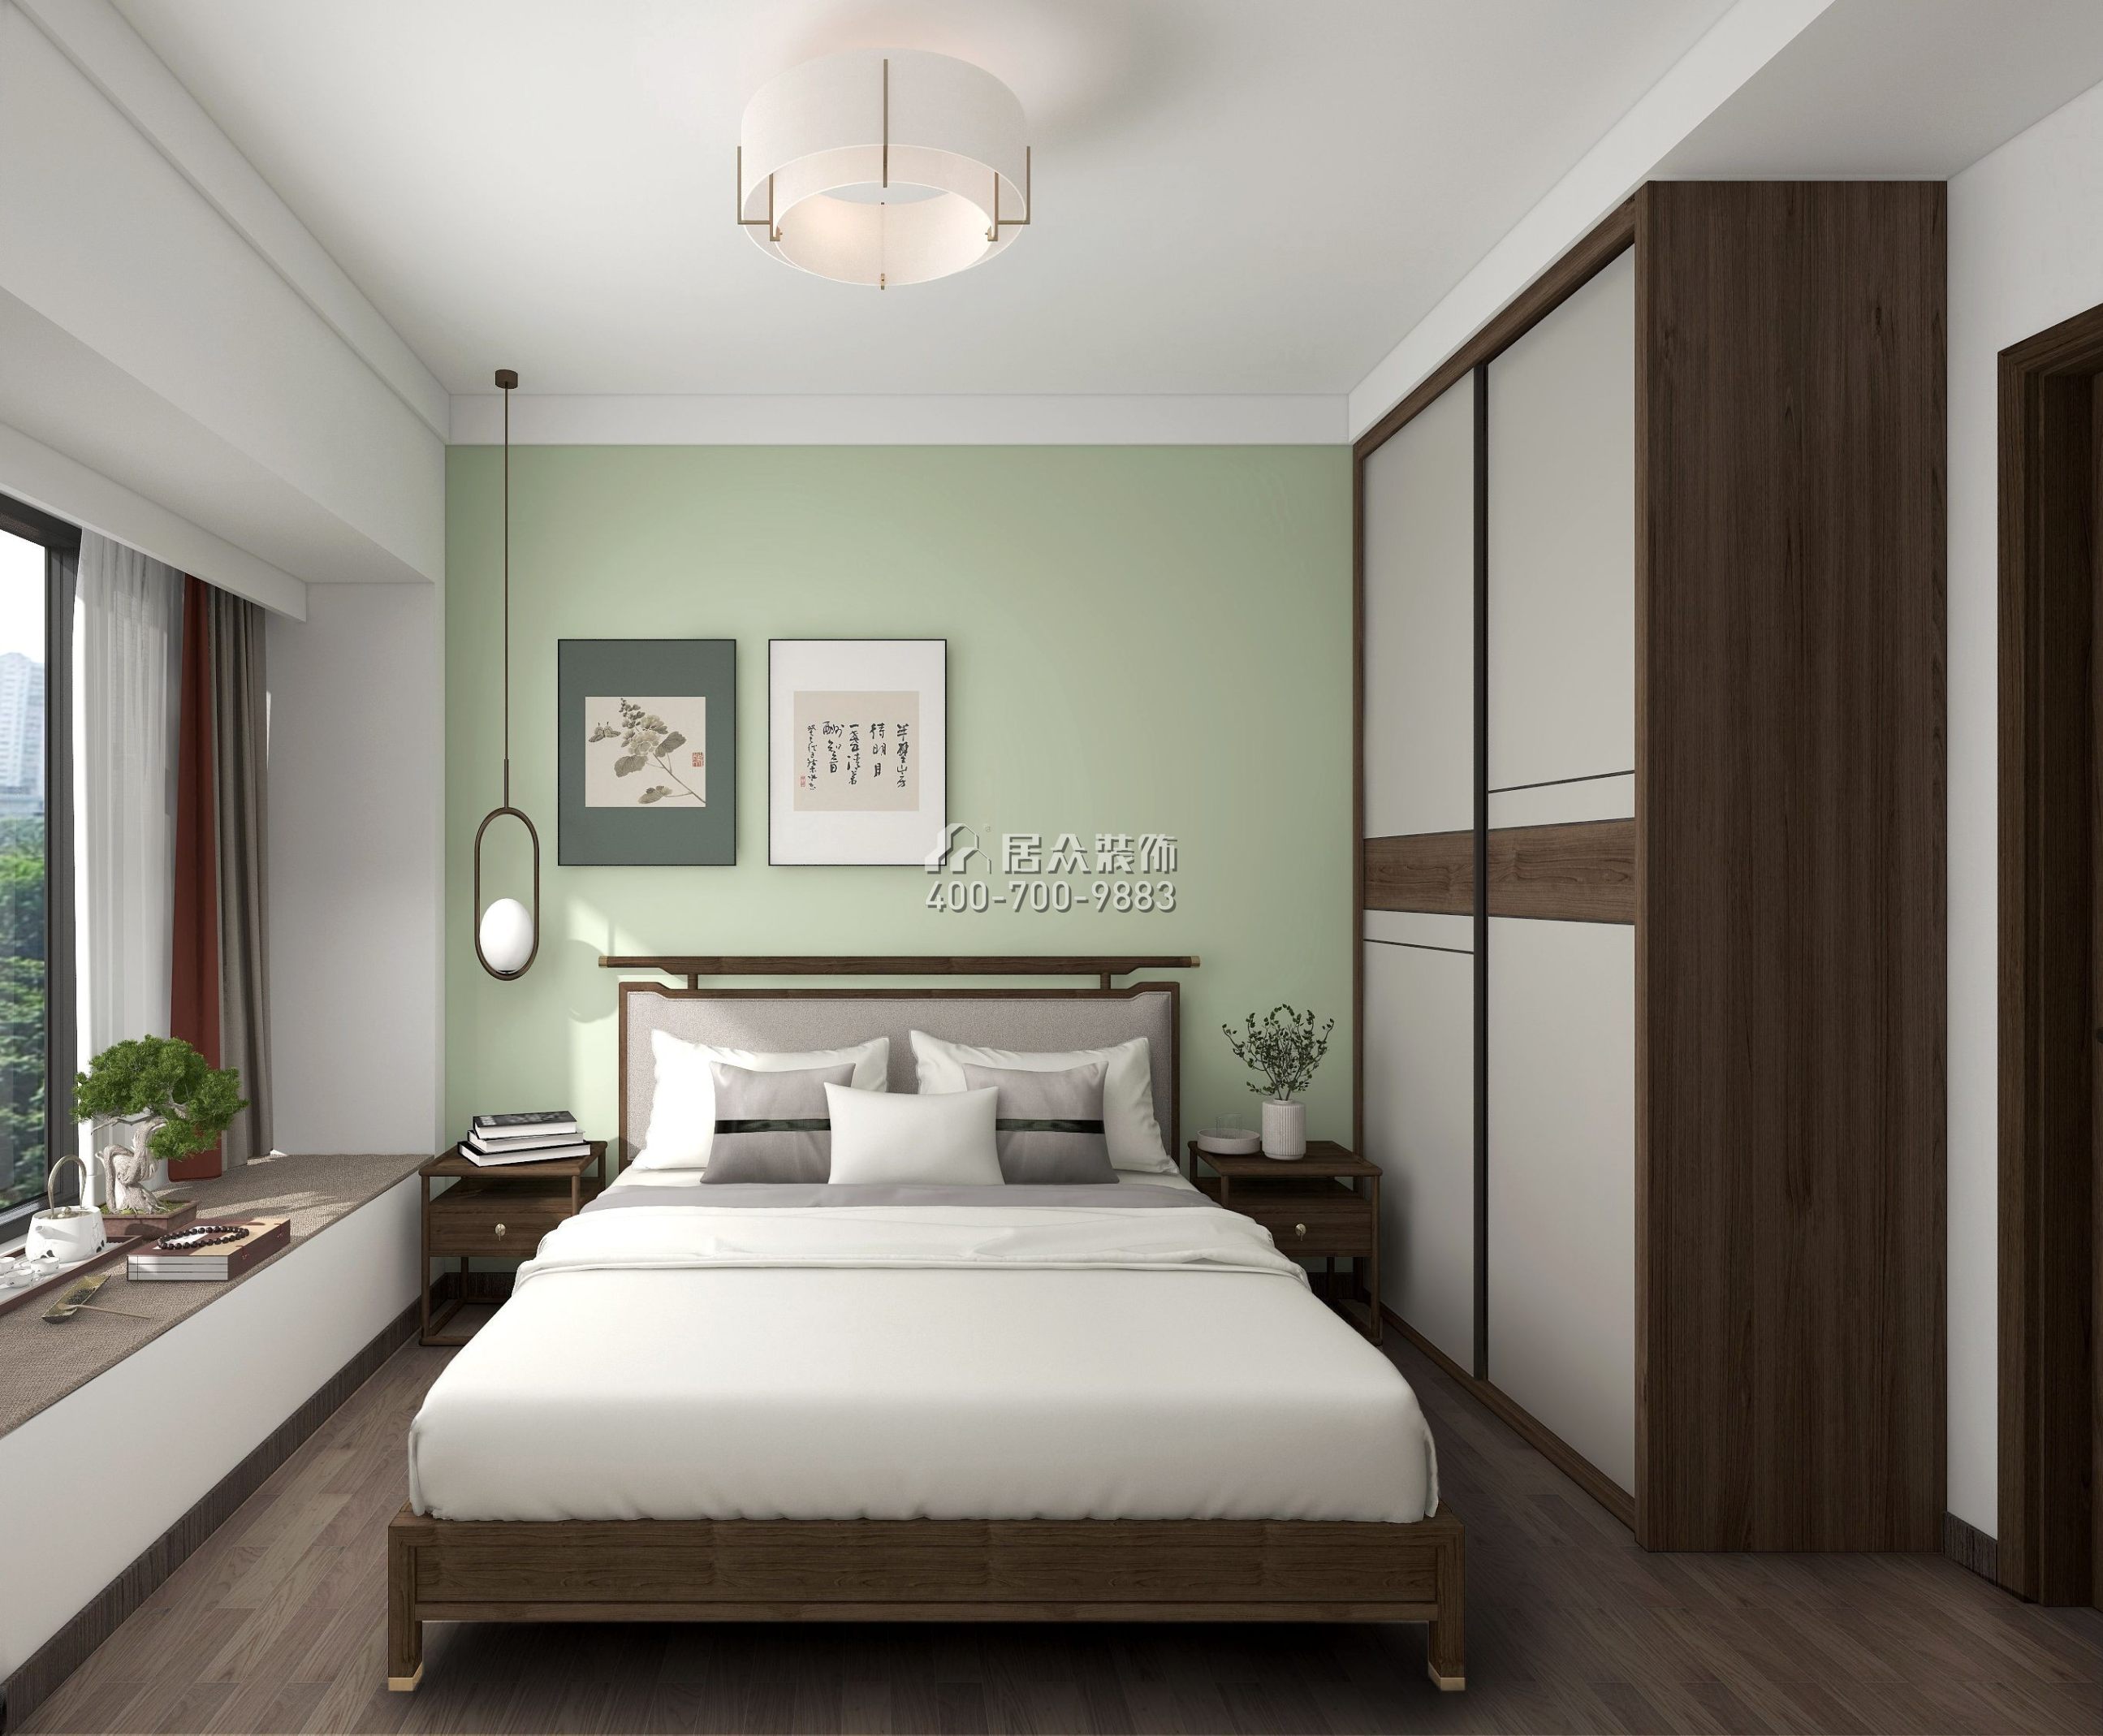 华发四季峰景124平方米中式风格平层户型卧室装修效果图